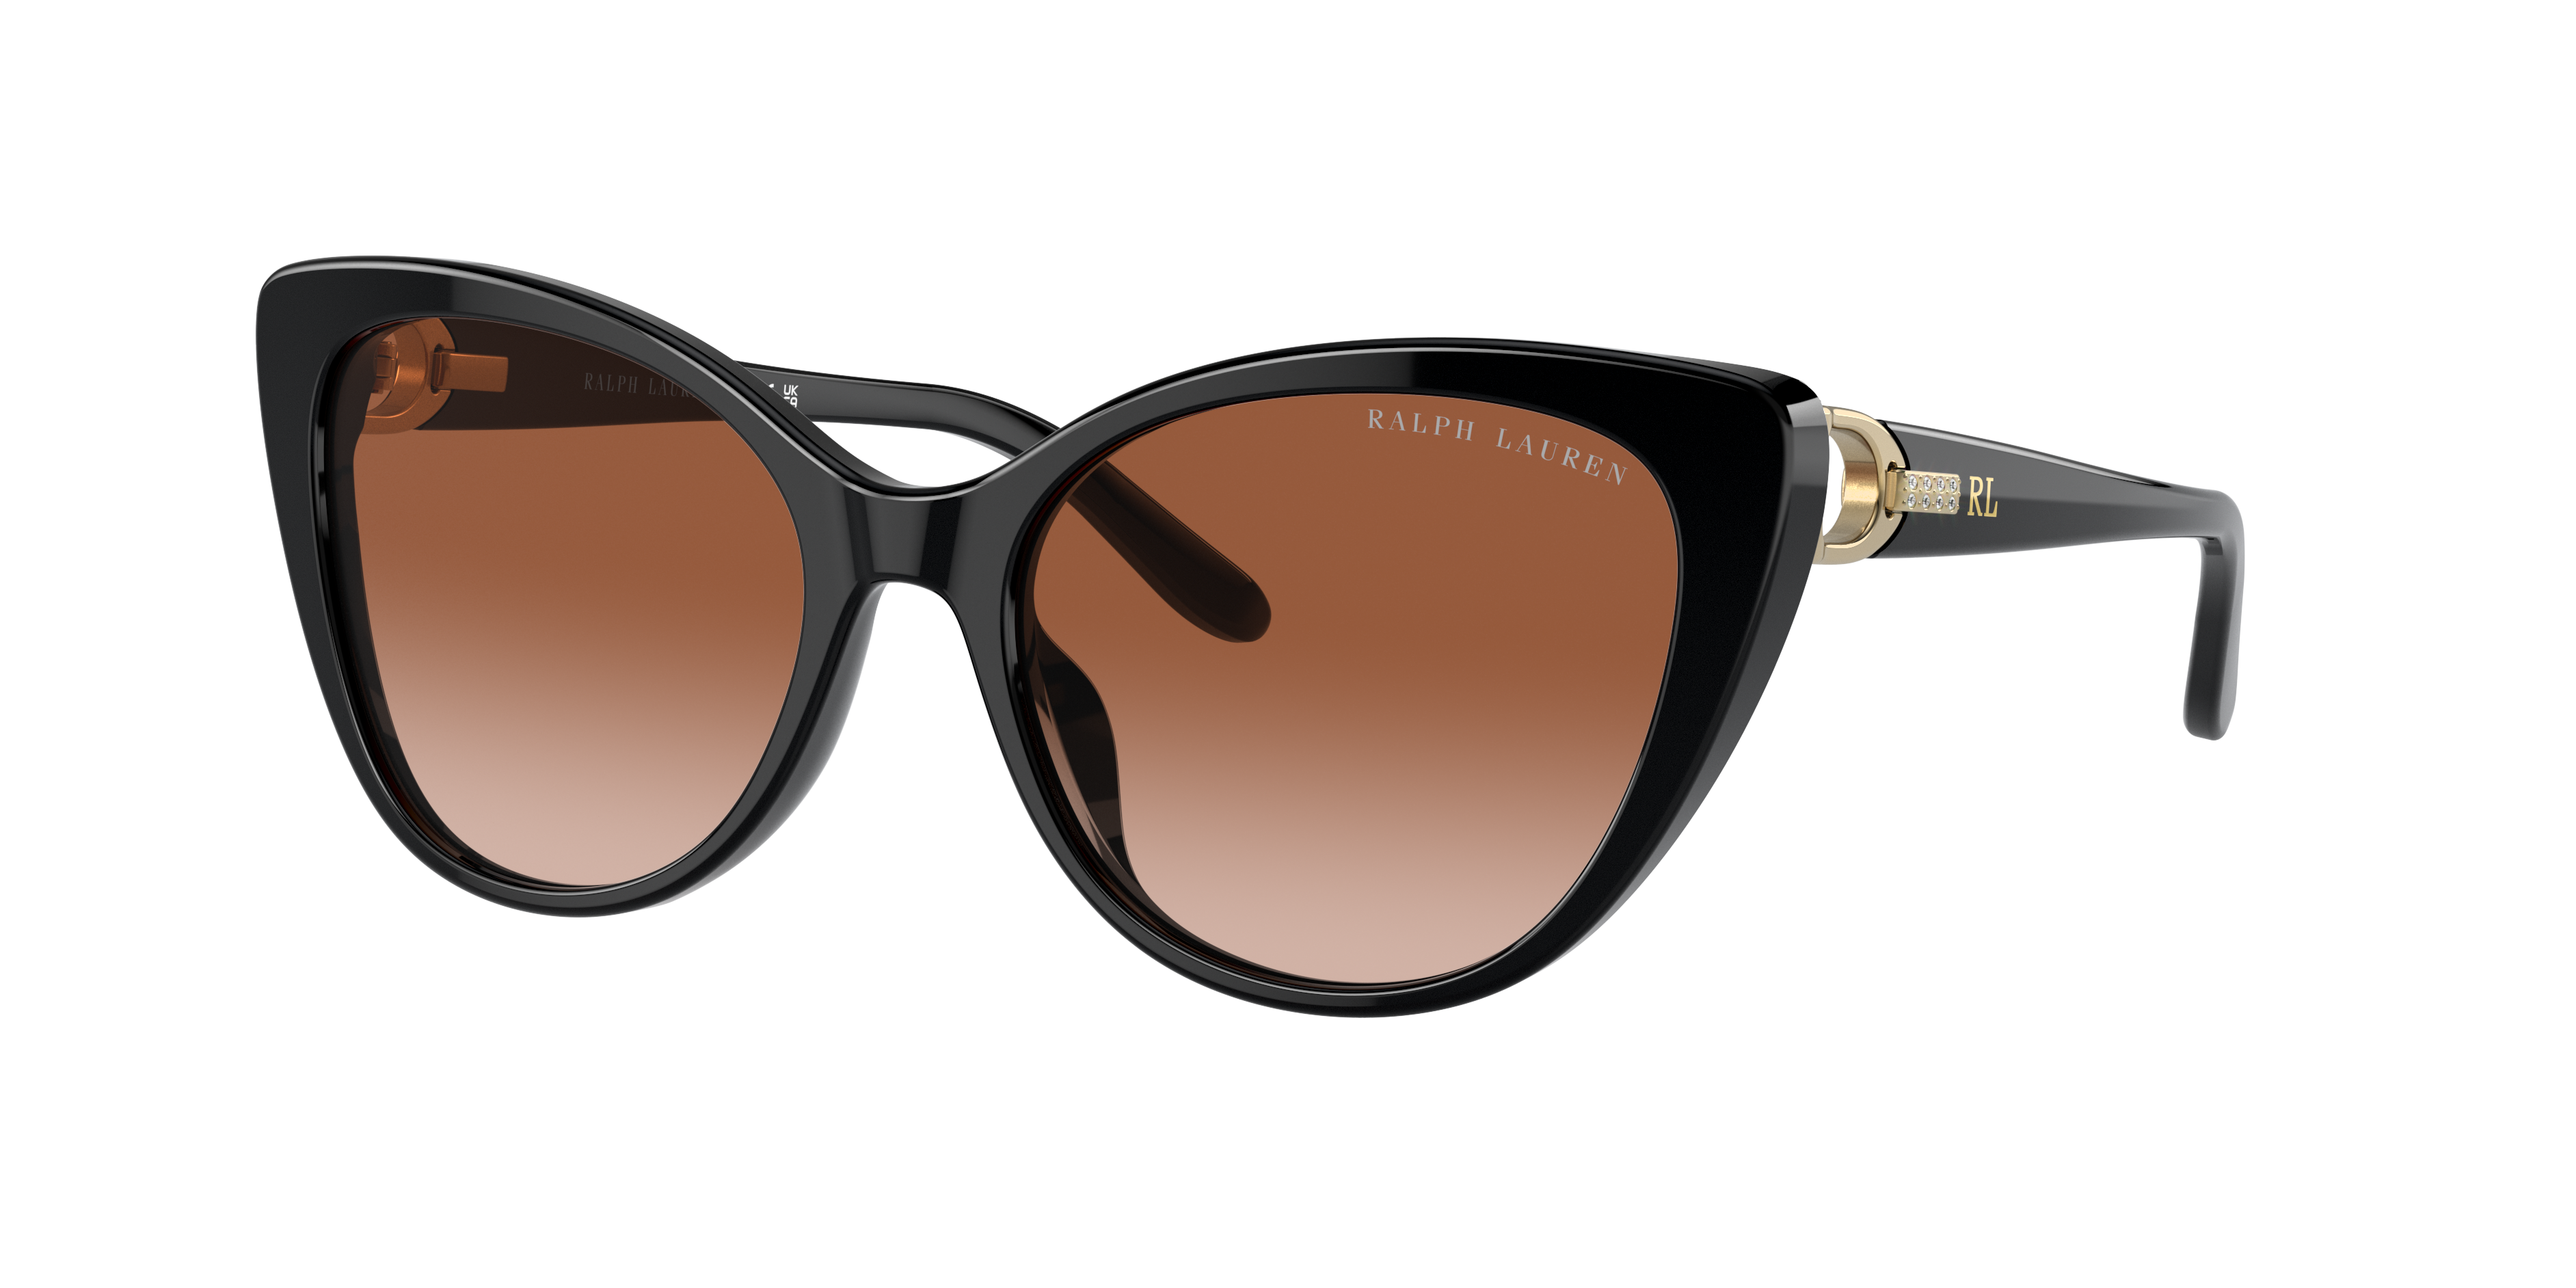 Ralph Lauren Women's Sunglasses, Rl8215bu In Gradient Brown